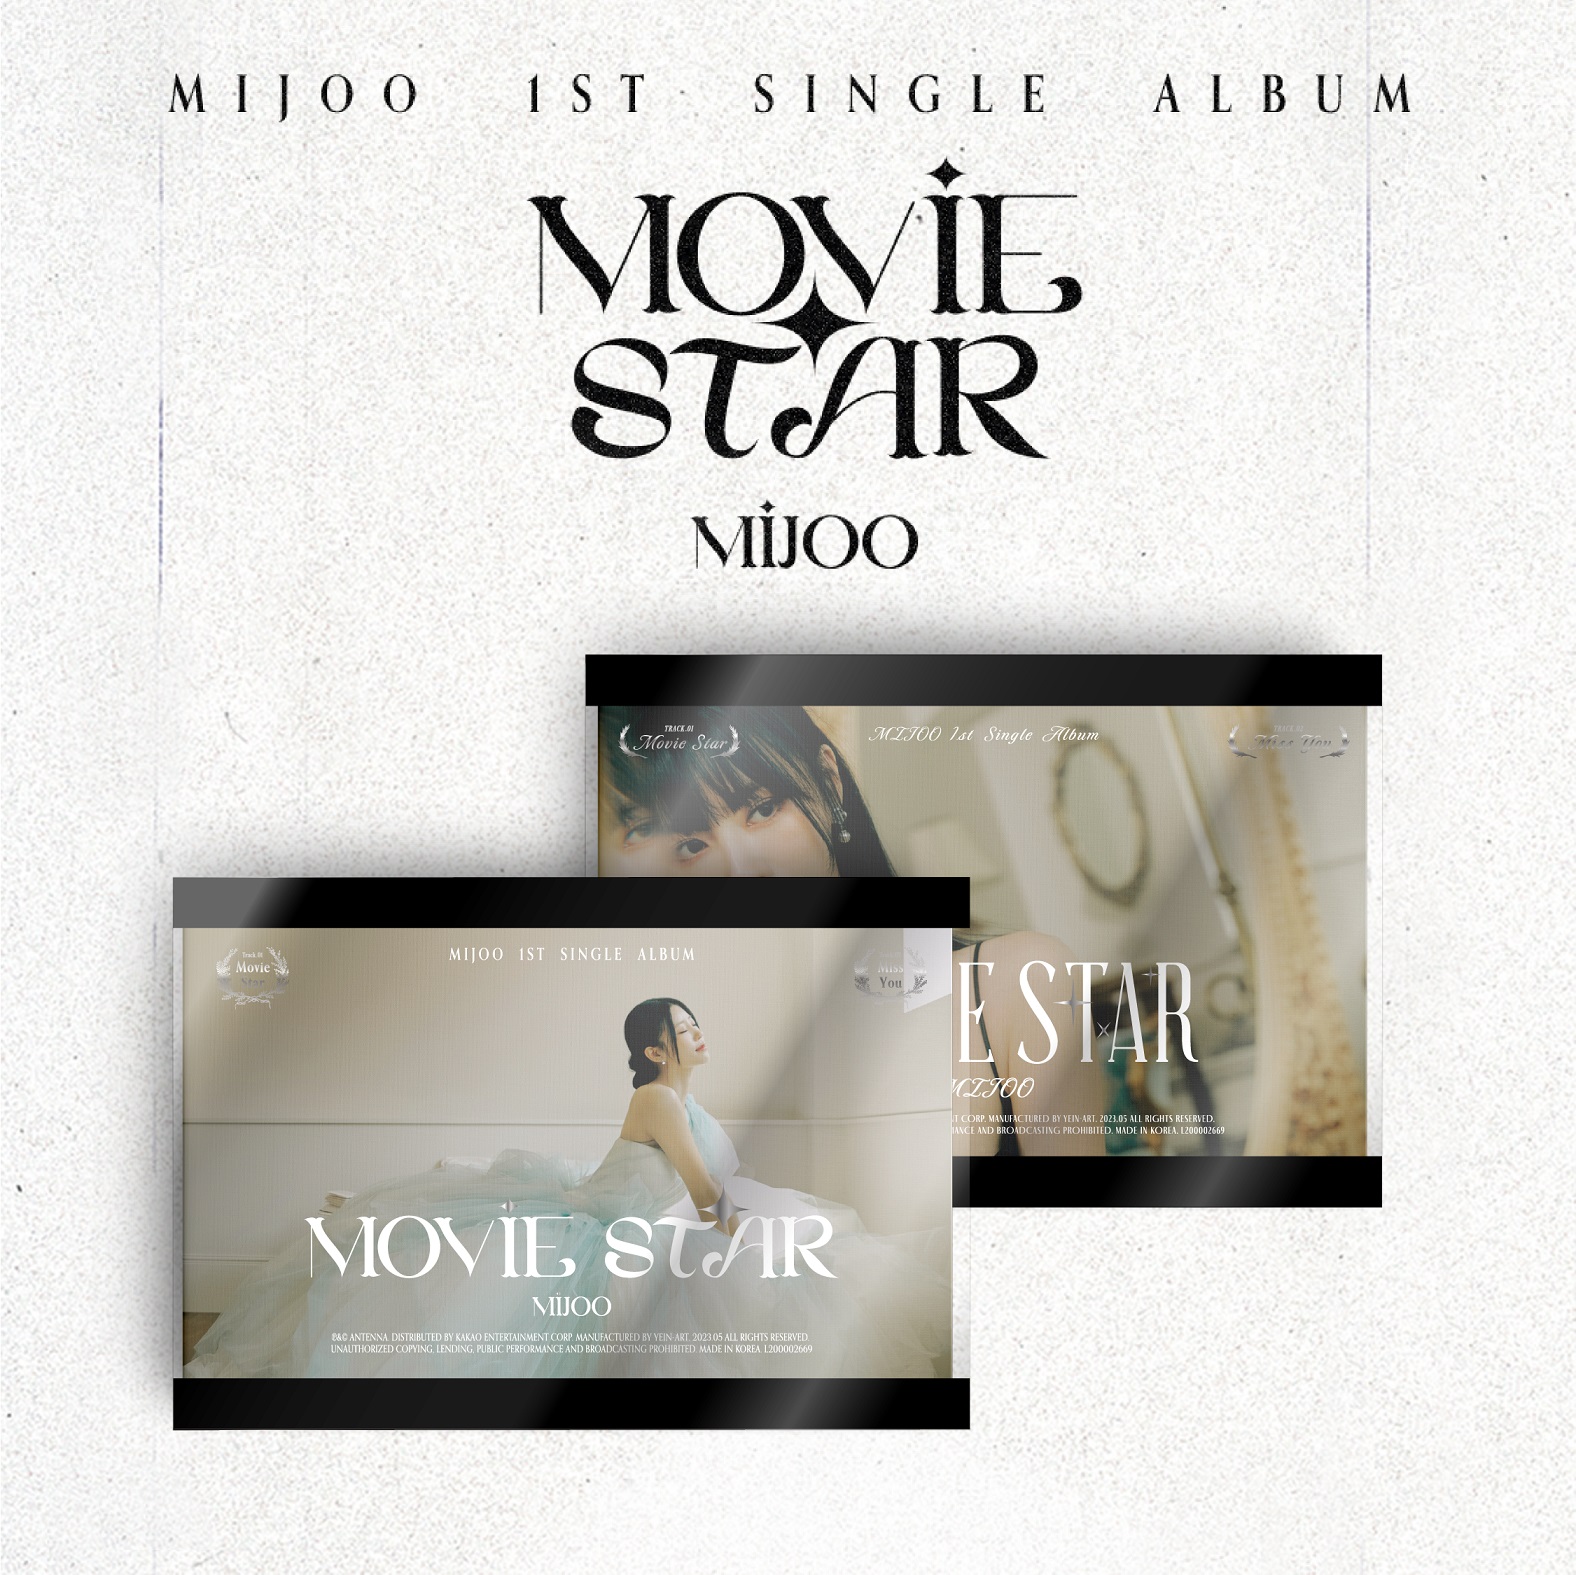 [全款 裸专] [Ktown4u Special Gift] MIJOO - 单曲1辑 [Movie Star] (随机版本)_NiceToMeetJoo_李美珠